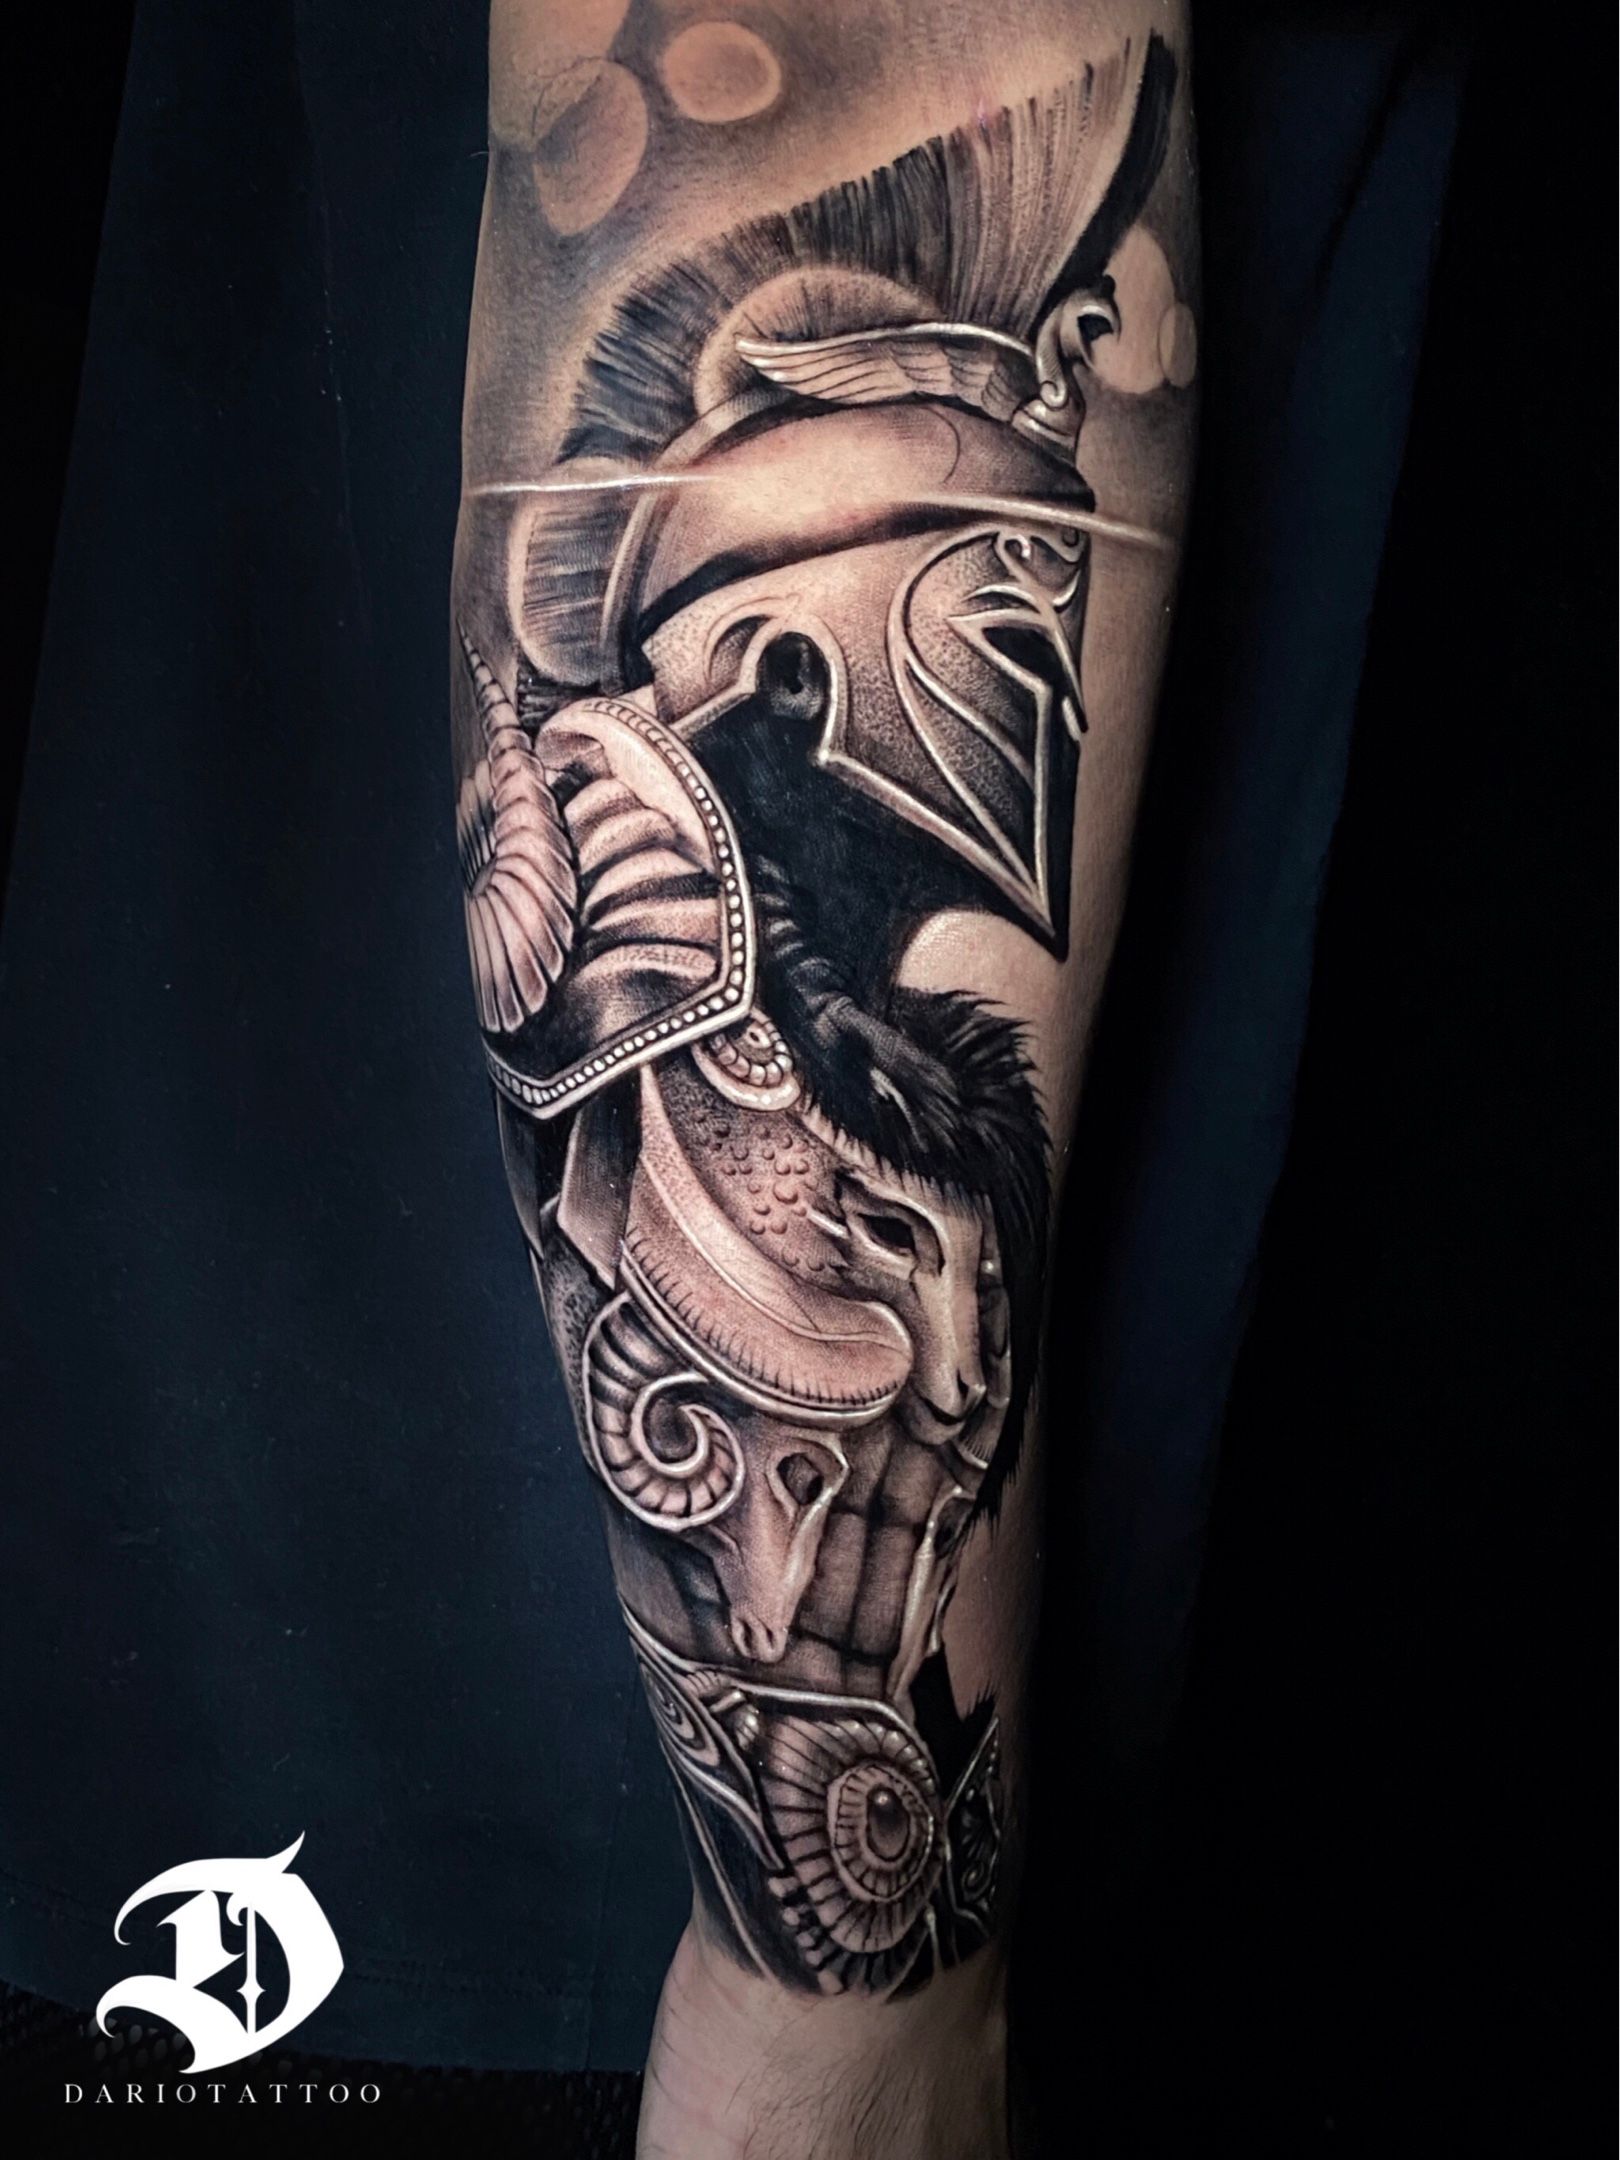 Warrior Tattoo | Sumina Shrestha | Suminu Tattoo in Nepal - Tattoo artist  in Nepal